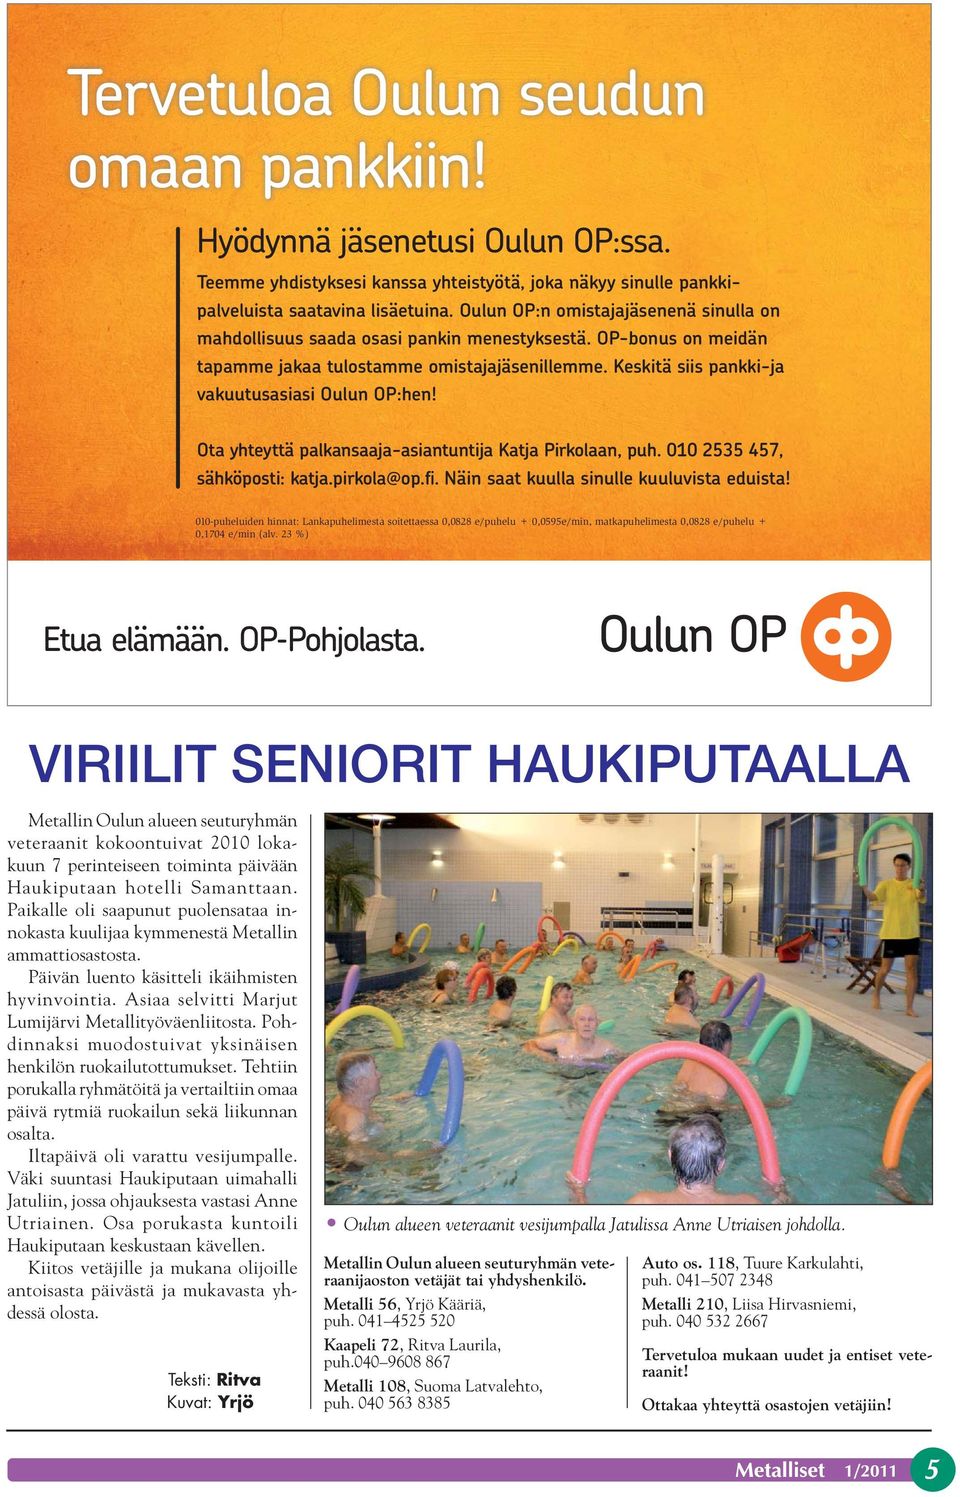 Keskitä siis pankki-ja vakuutusasiasi Oulun OP:hen! Ota yhteyttä palkansaaja-asiantuntija Katja Pirkolaan, puh. 010 2535 457, sähköposti: katja.pirkola@op.fi.